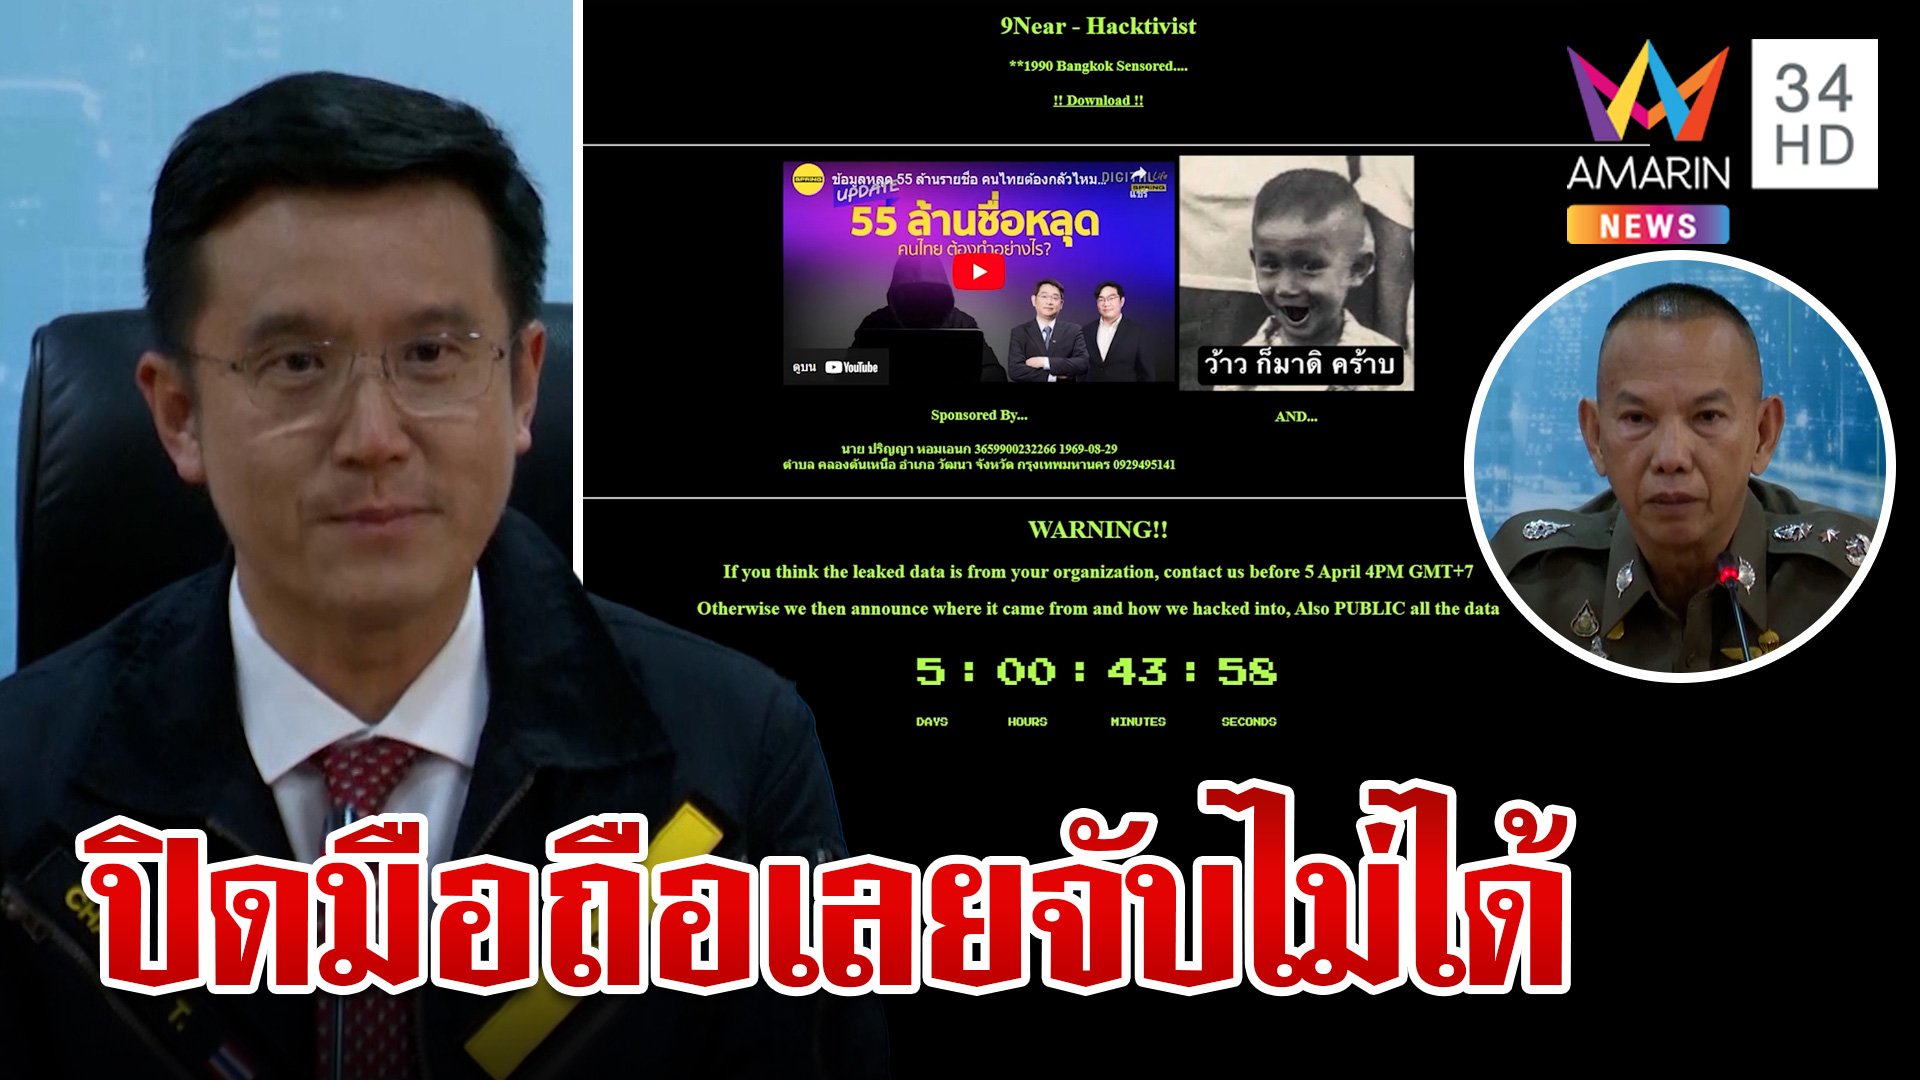 ยังลอยนวล! สิบโทแฮกเกอร์ฉกข้อมูล 55 ล้านคนไทย   | ทุบโต๊ะข่าว | 7 เม.ย. 66 | AMARIN TVHD34